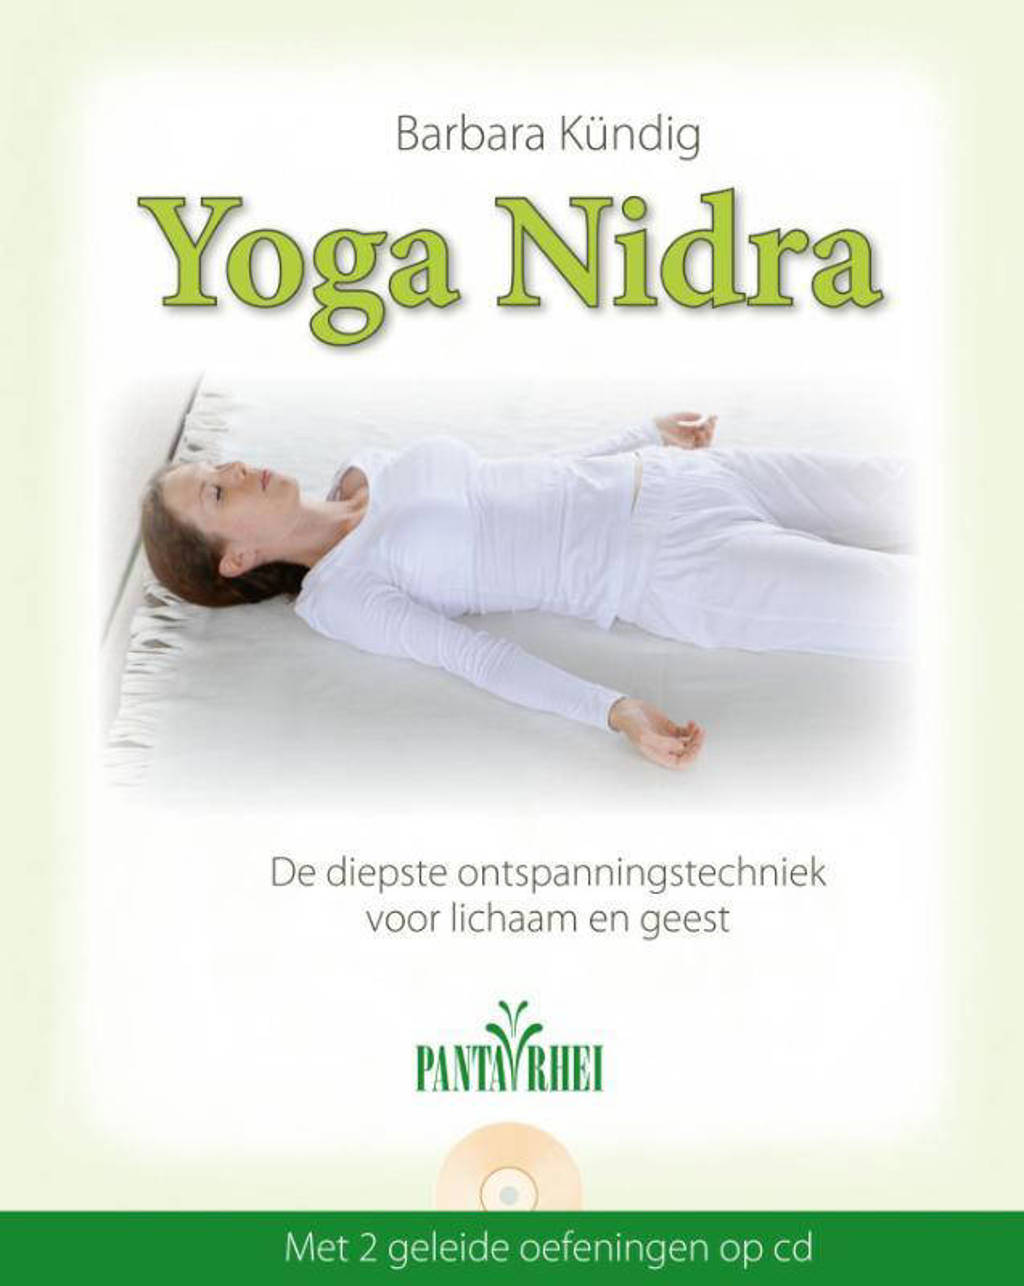 Yoga Nidra - Barbara Kundig